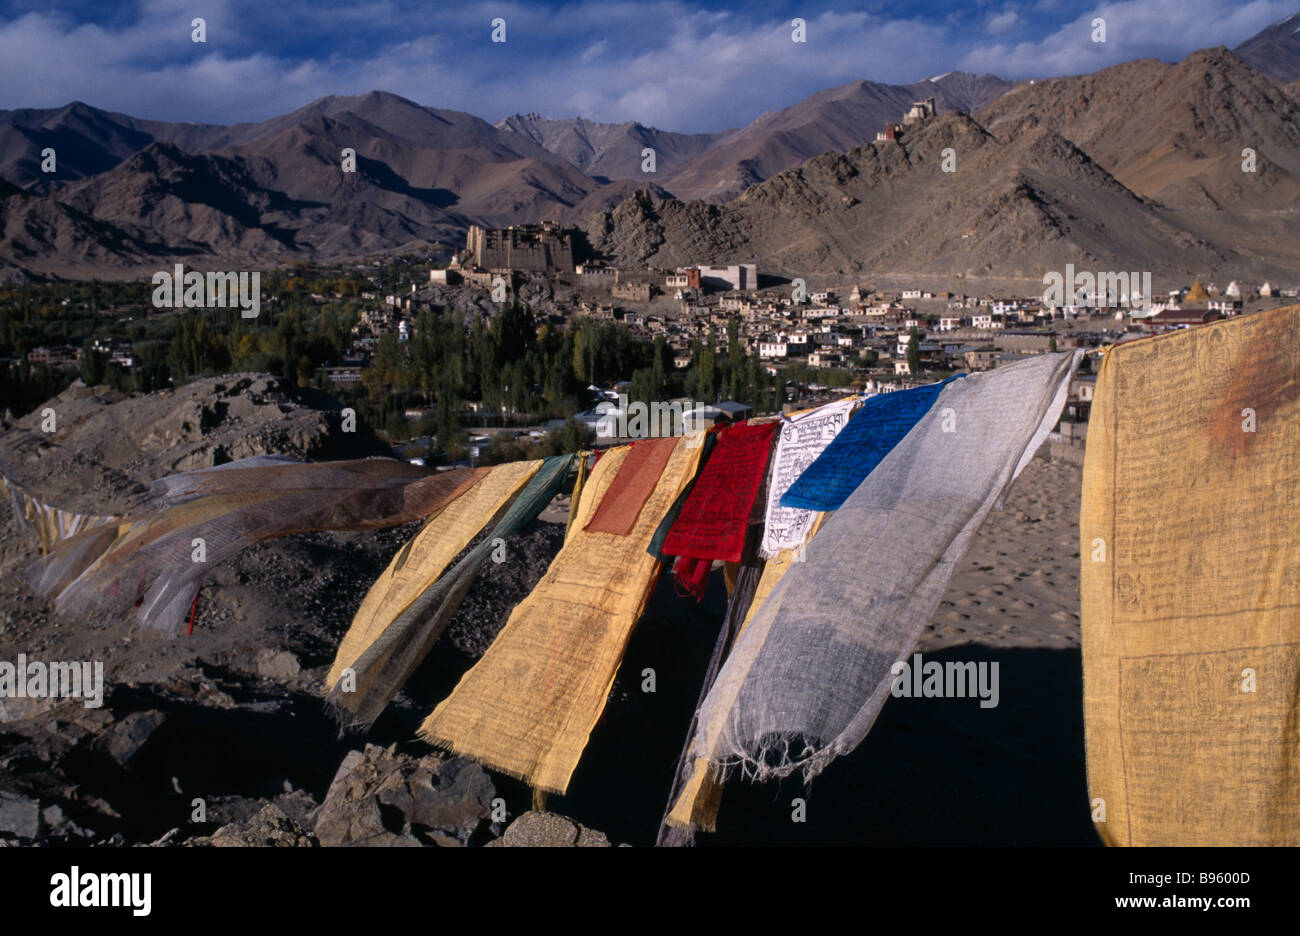 Inde Ladakh Leh Leh et vue sur la vallée de la ville de hill-top avec la ligne de prière drapeaux flottants dans le vent en premier plan. Banque D'Images